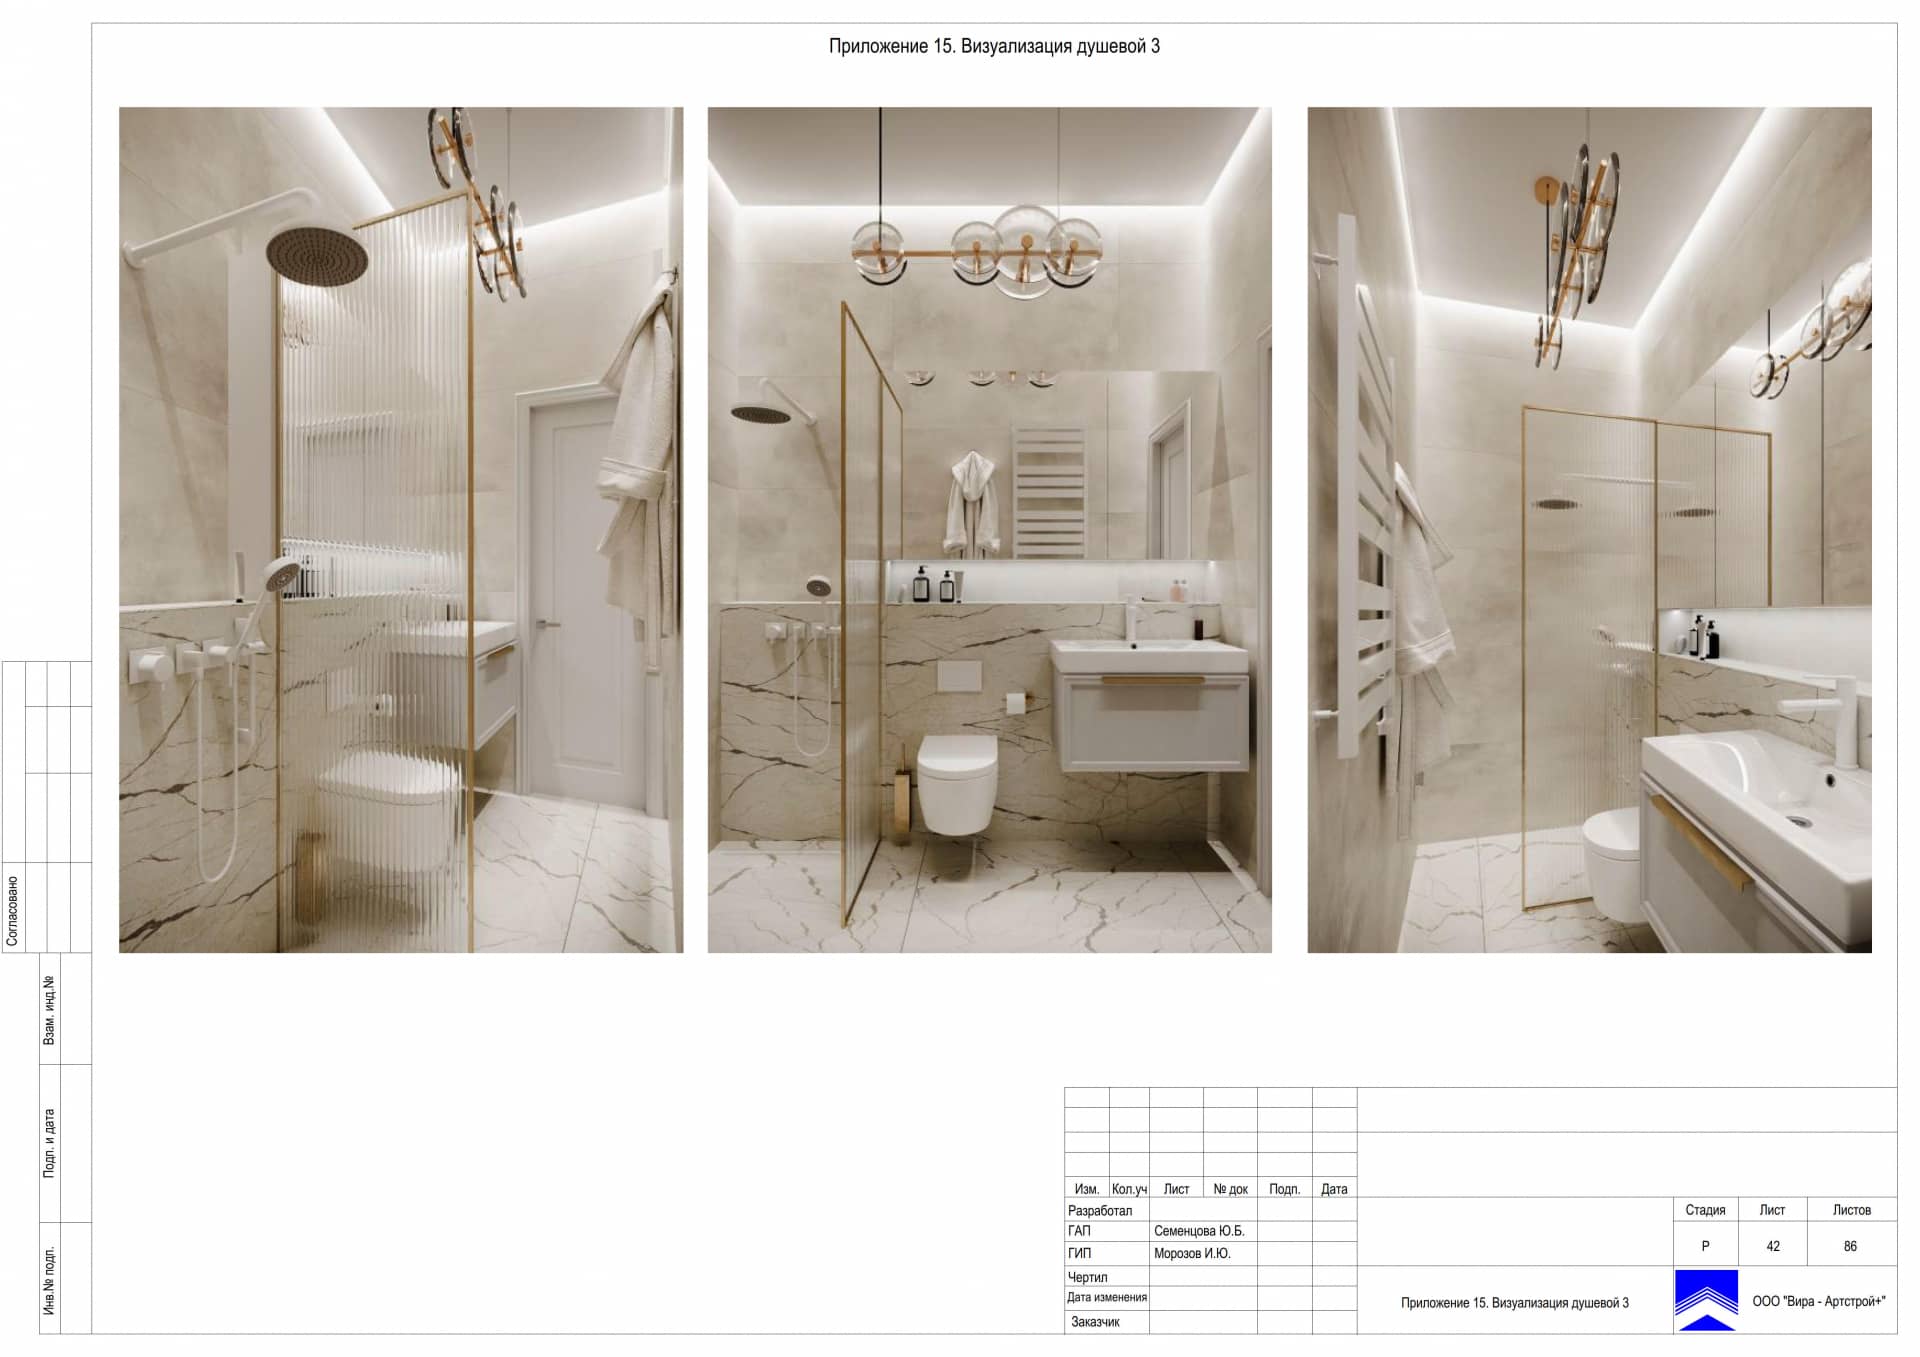 Приложение 15. Визуализация душевой 3, дом 471 м² в КП «Сорочаны»